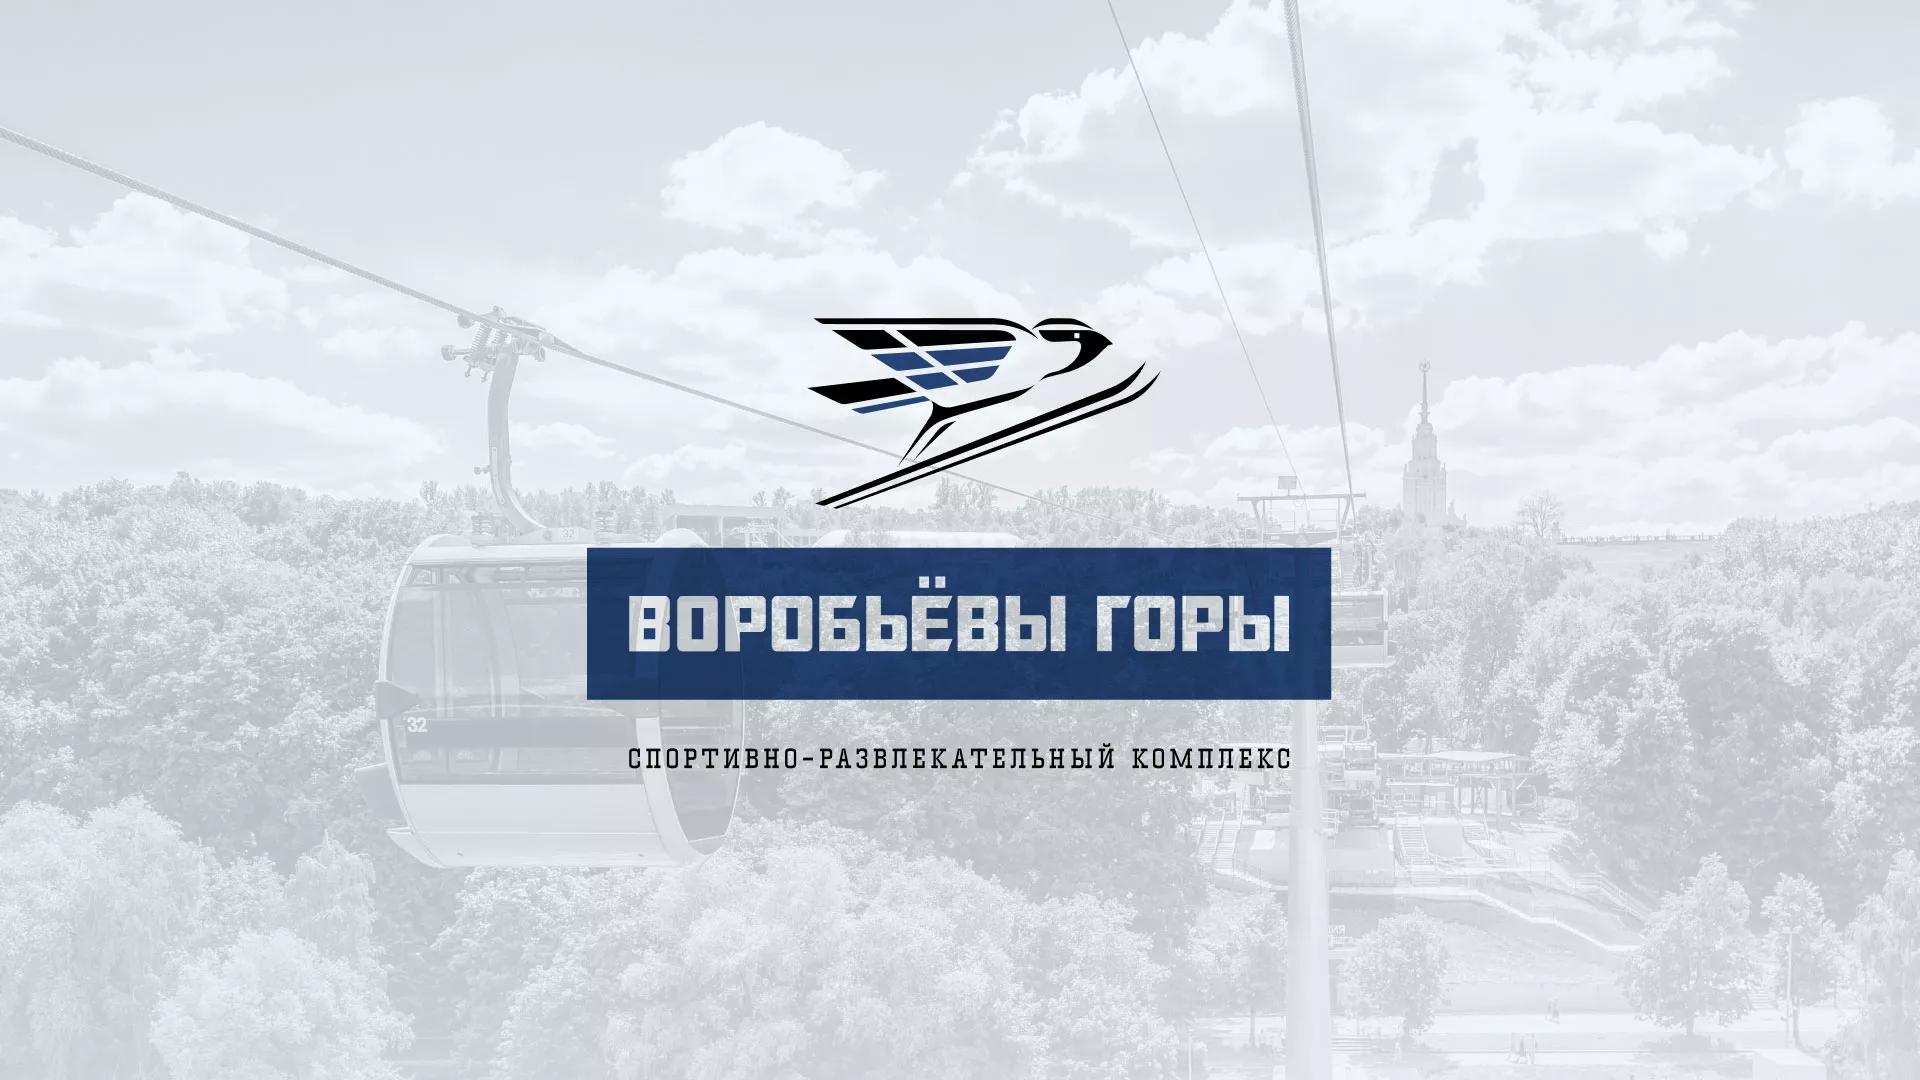 Разработка сайта в Октябрьске для спортивно-развлекательного комплекса «Воробьёвы горы»